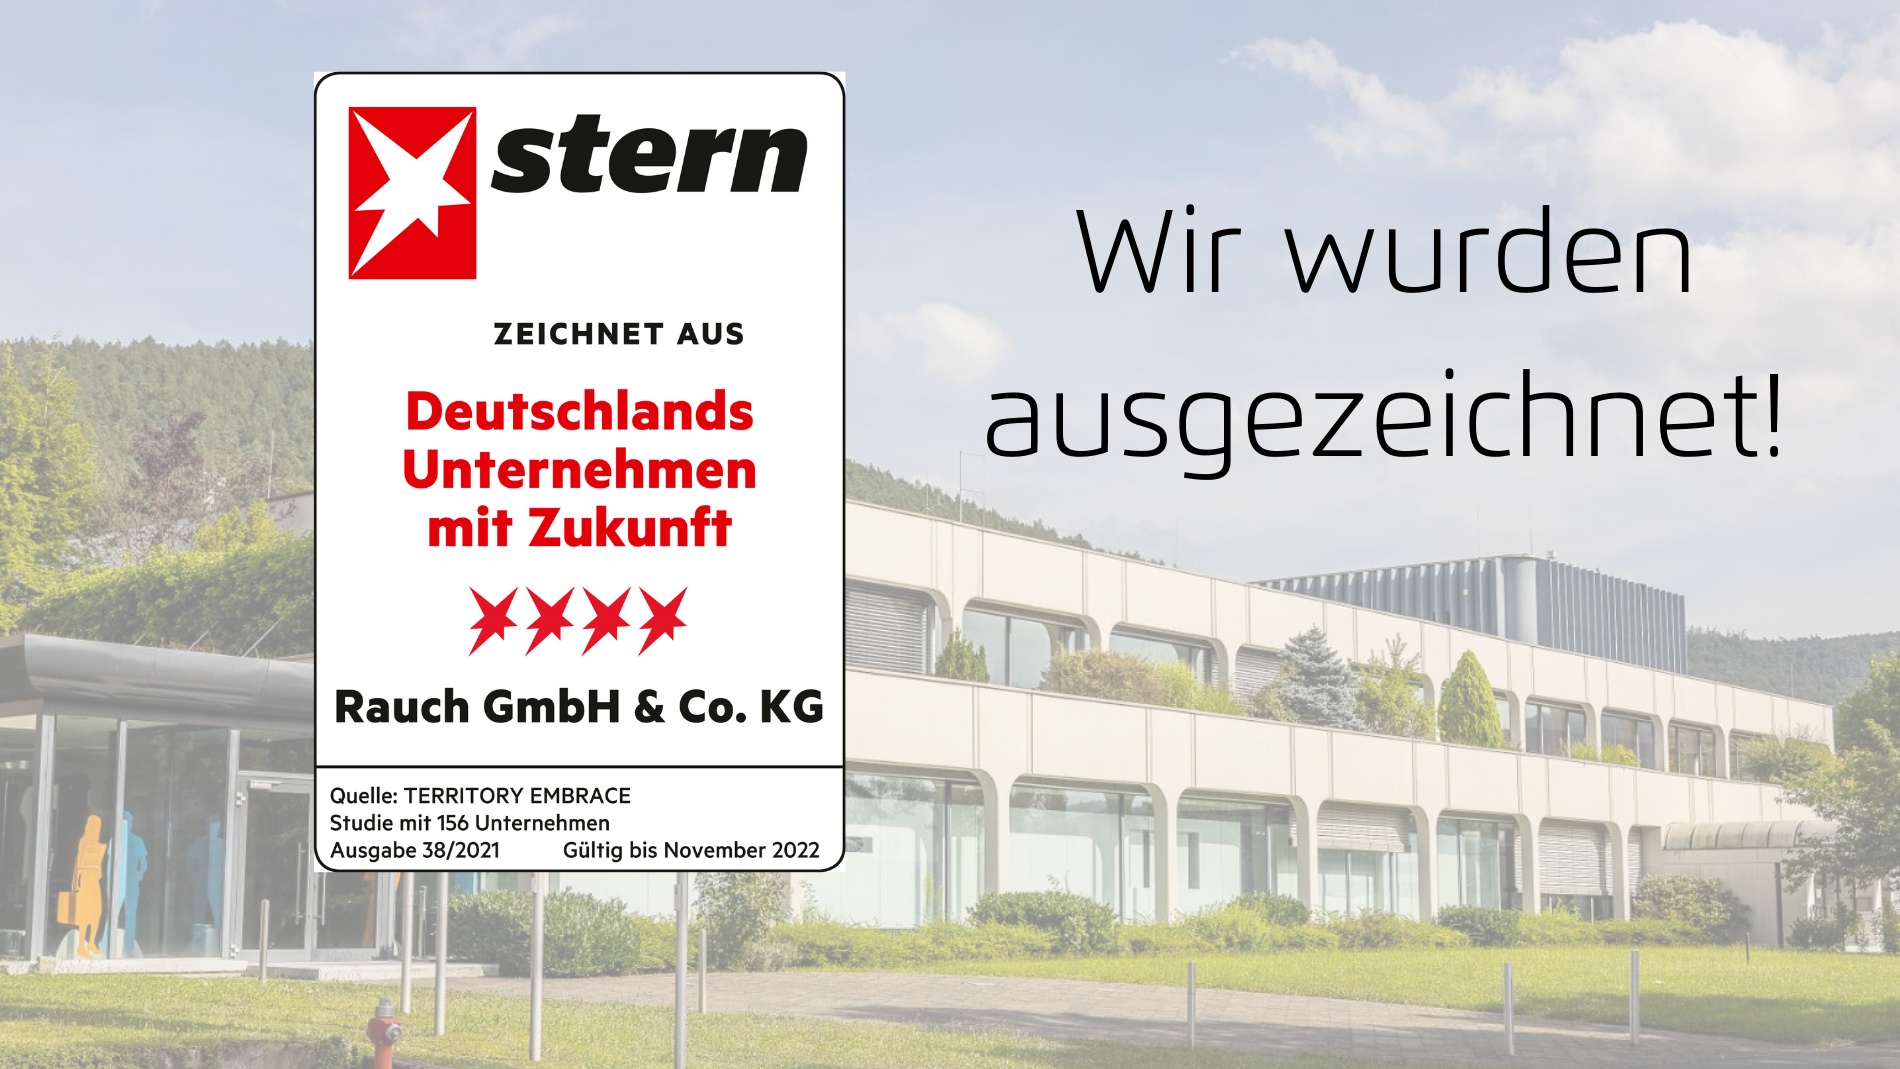 stern-Auszeichnung für "Deutschlands Unternehmen mit Zukunft."